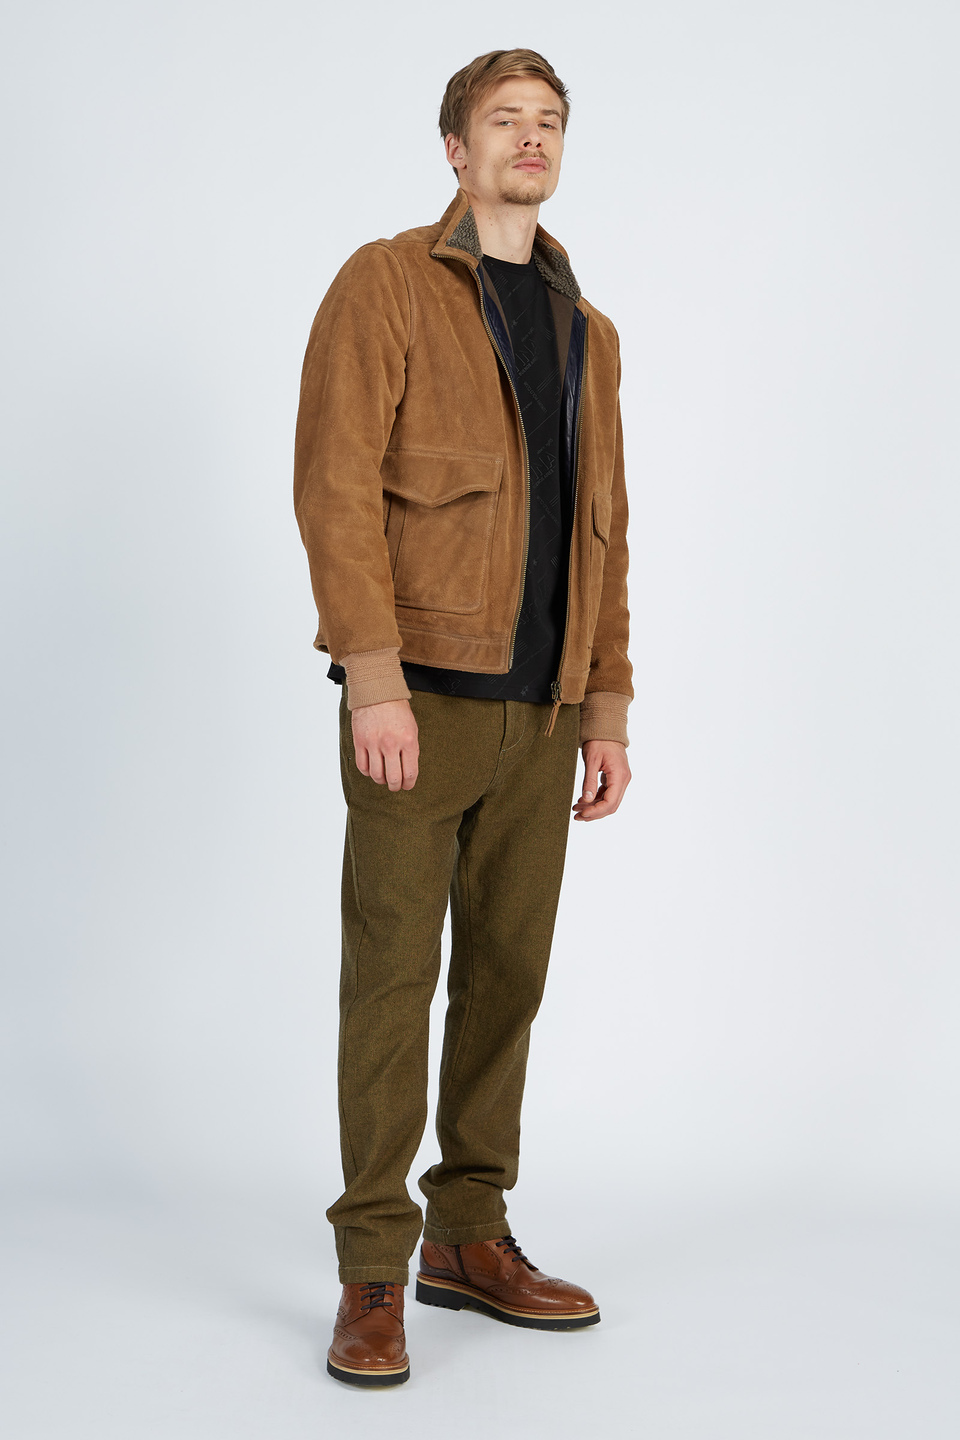 Pantalone da uomo modello 5 tasche in cotone regular fit | La Martina - Official Online Shop